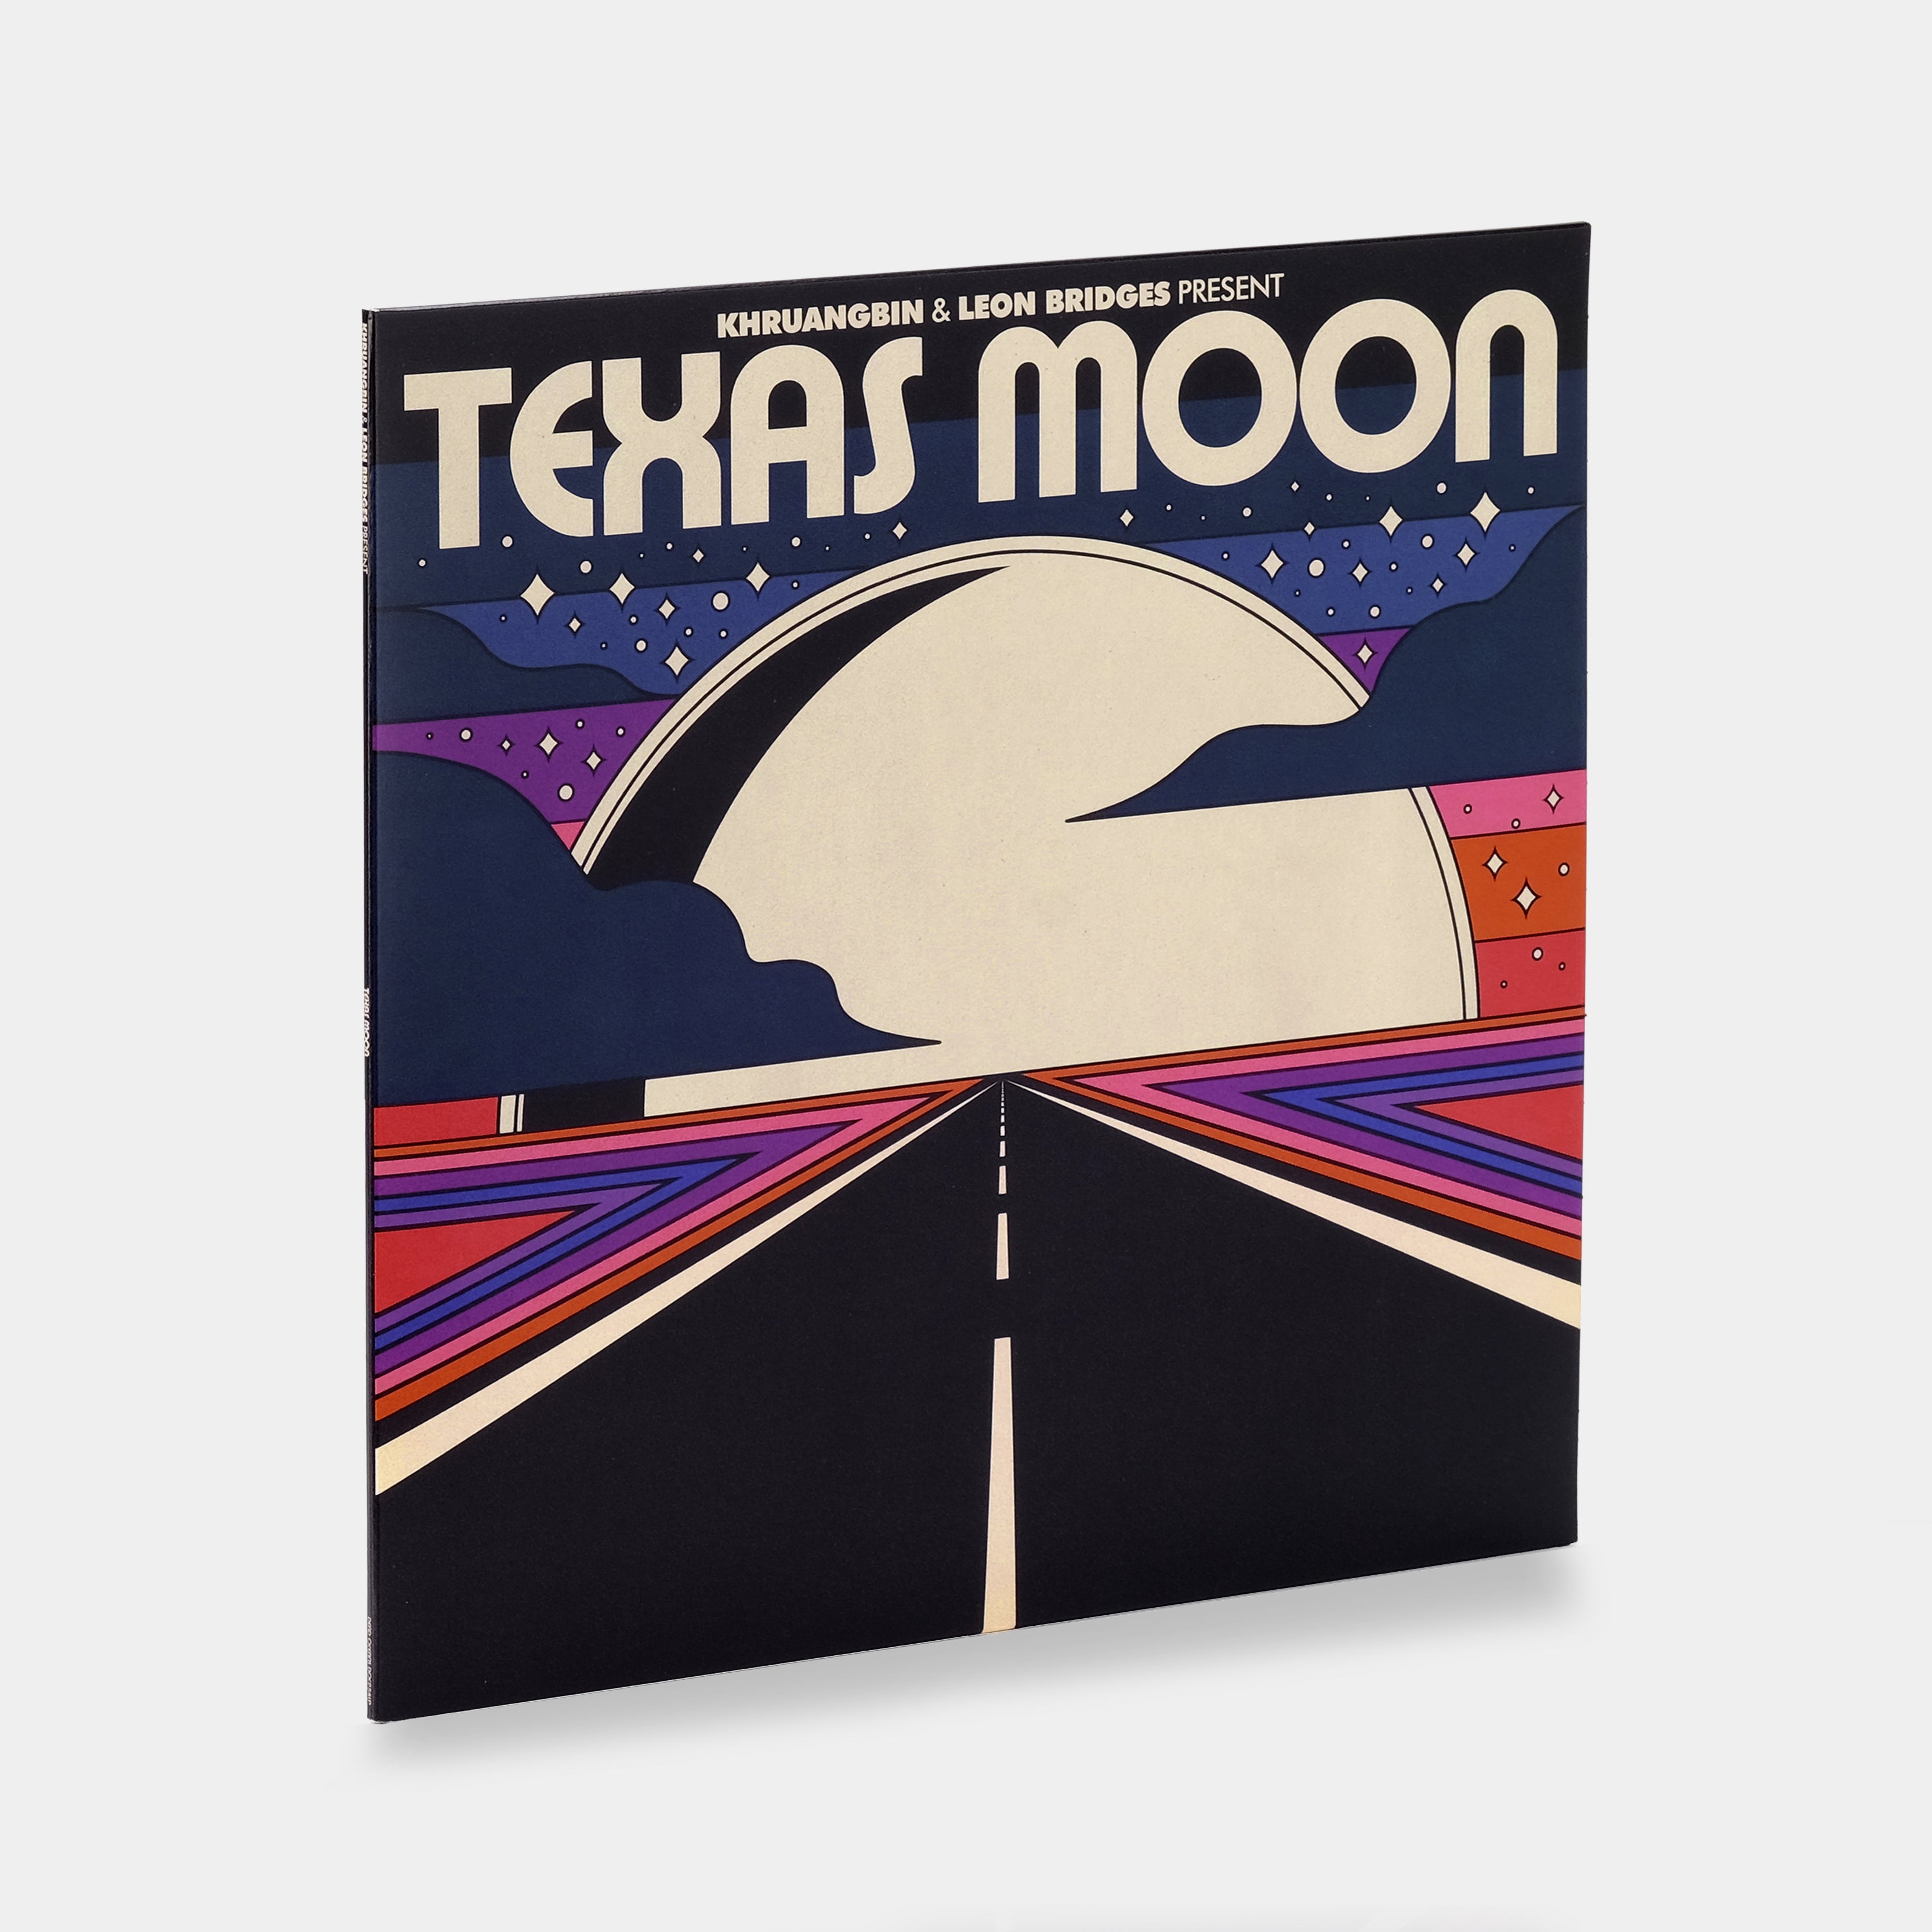 Khruangbin & Leon Bridges - Texas Moon EP Vinyl Record